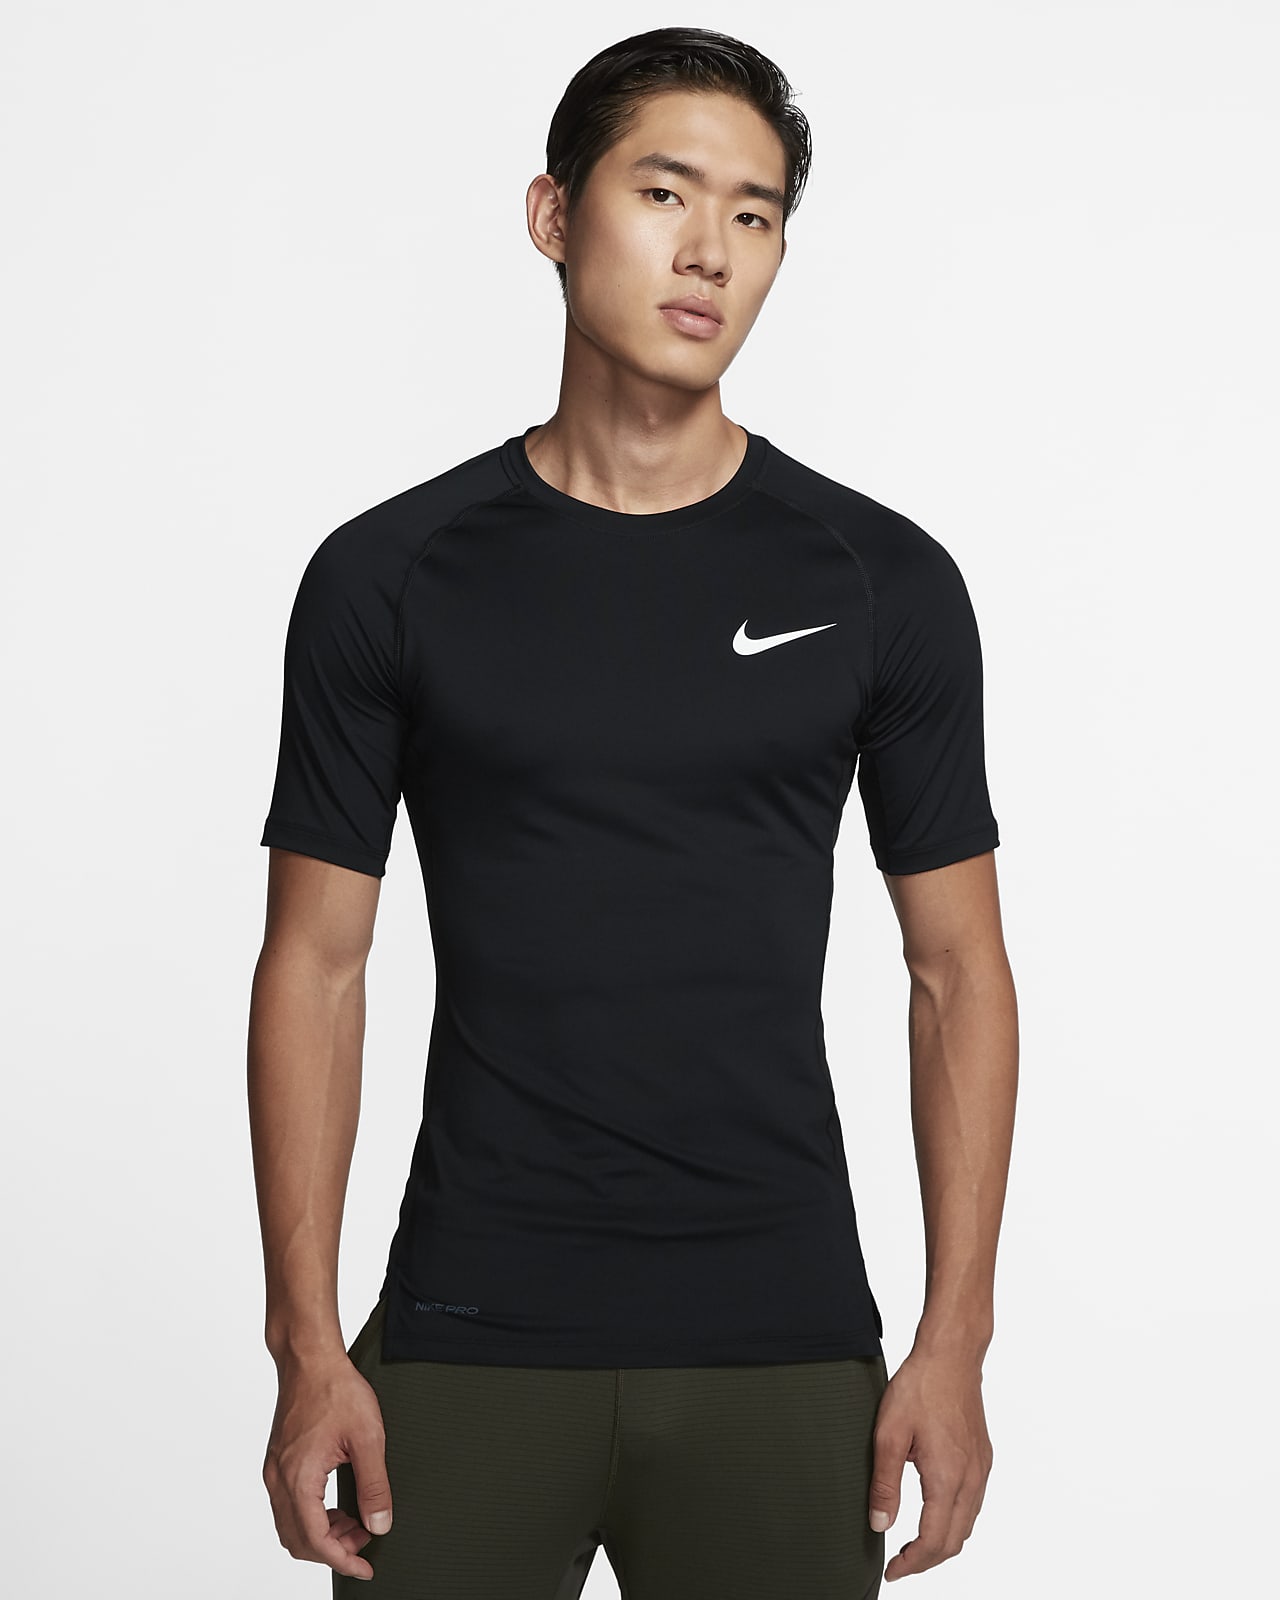 เสื้อแขนสั้นผู้ชายทรงรัดรูป Nike Pro